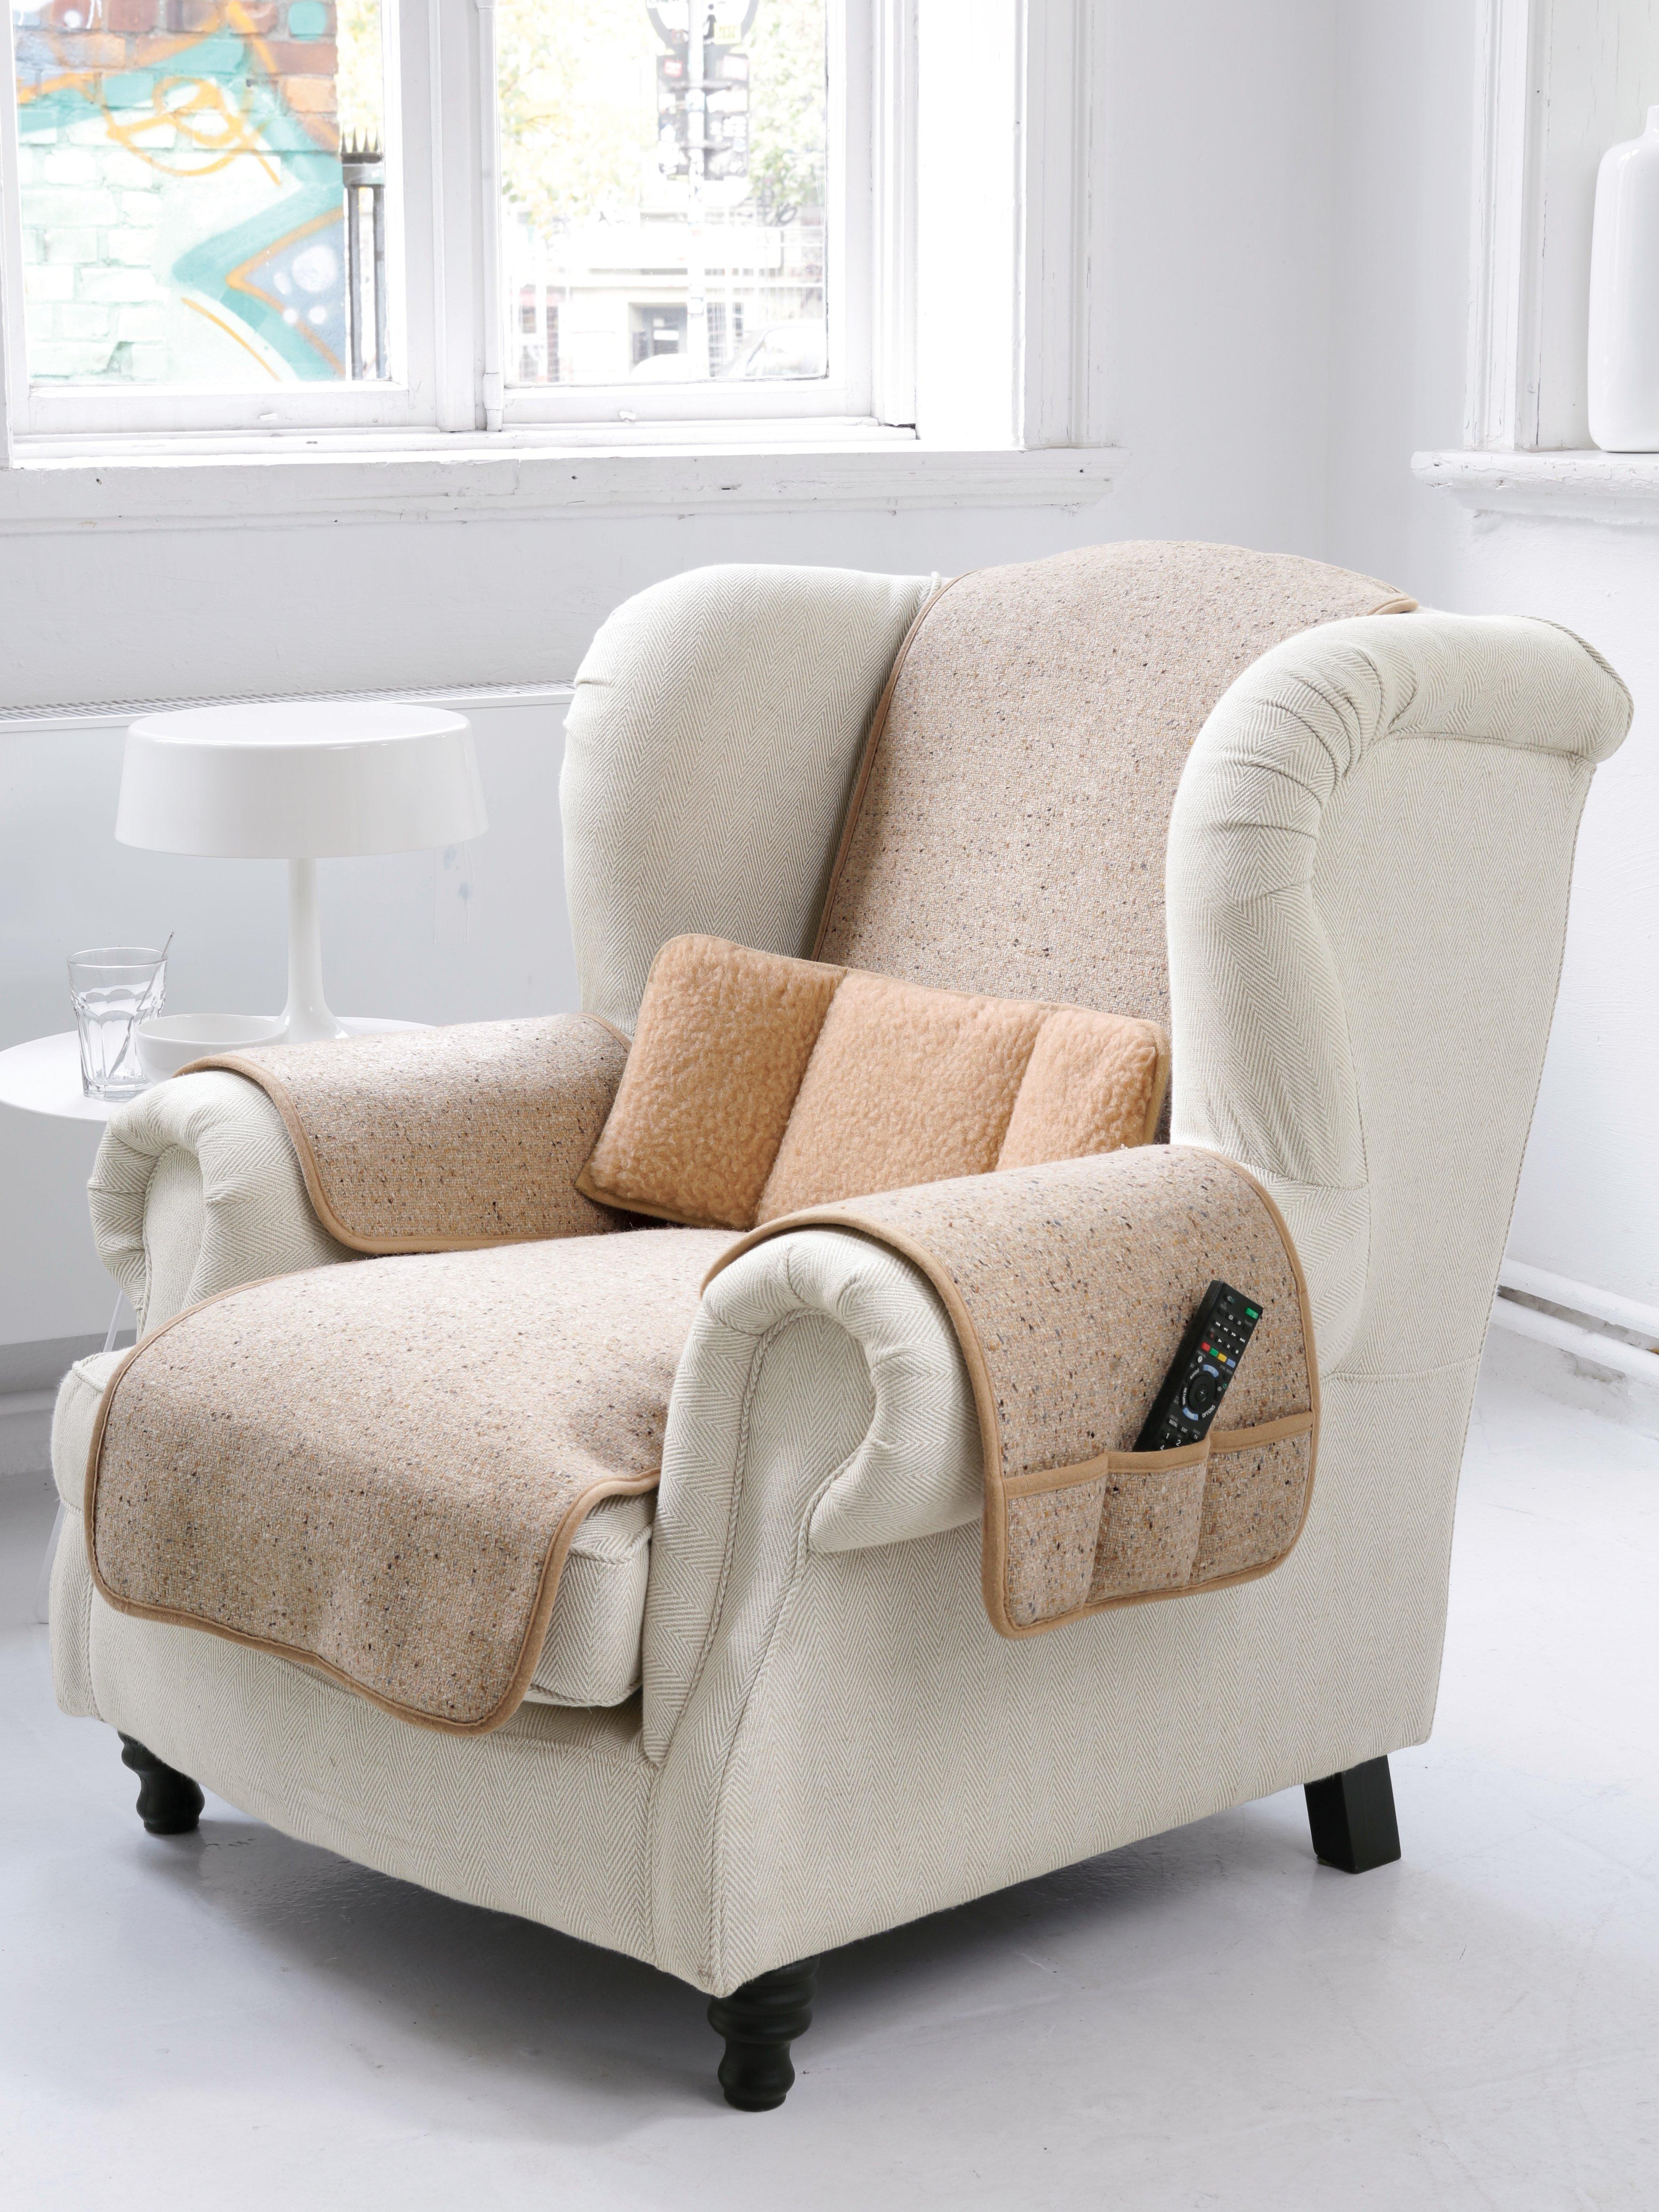 Irelamb - Le protège-fauteuil en pure laine vierge, 50x150cm